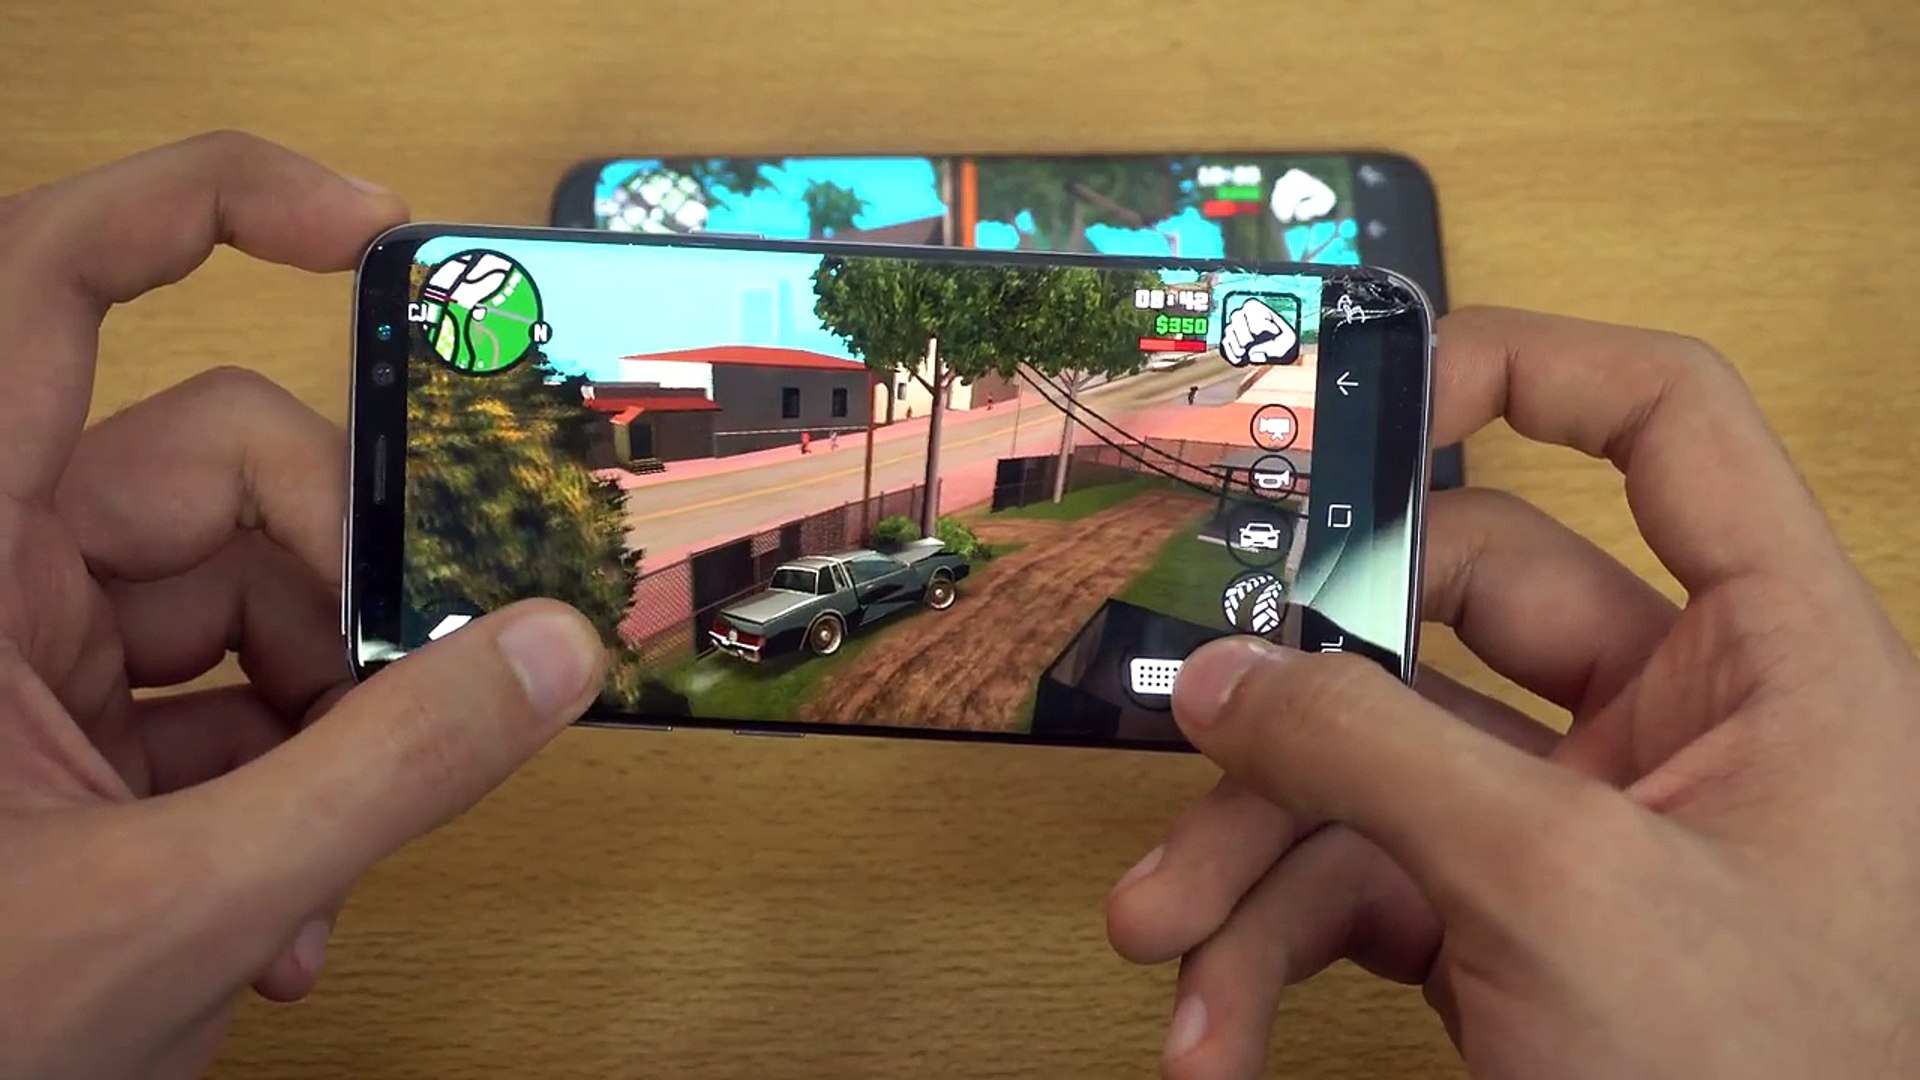 Gameplay Android - GTA San Andreas - Samsung Galaxy J7 2016 Metal